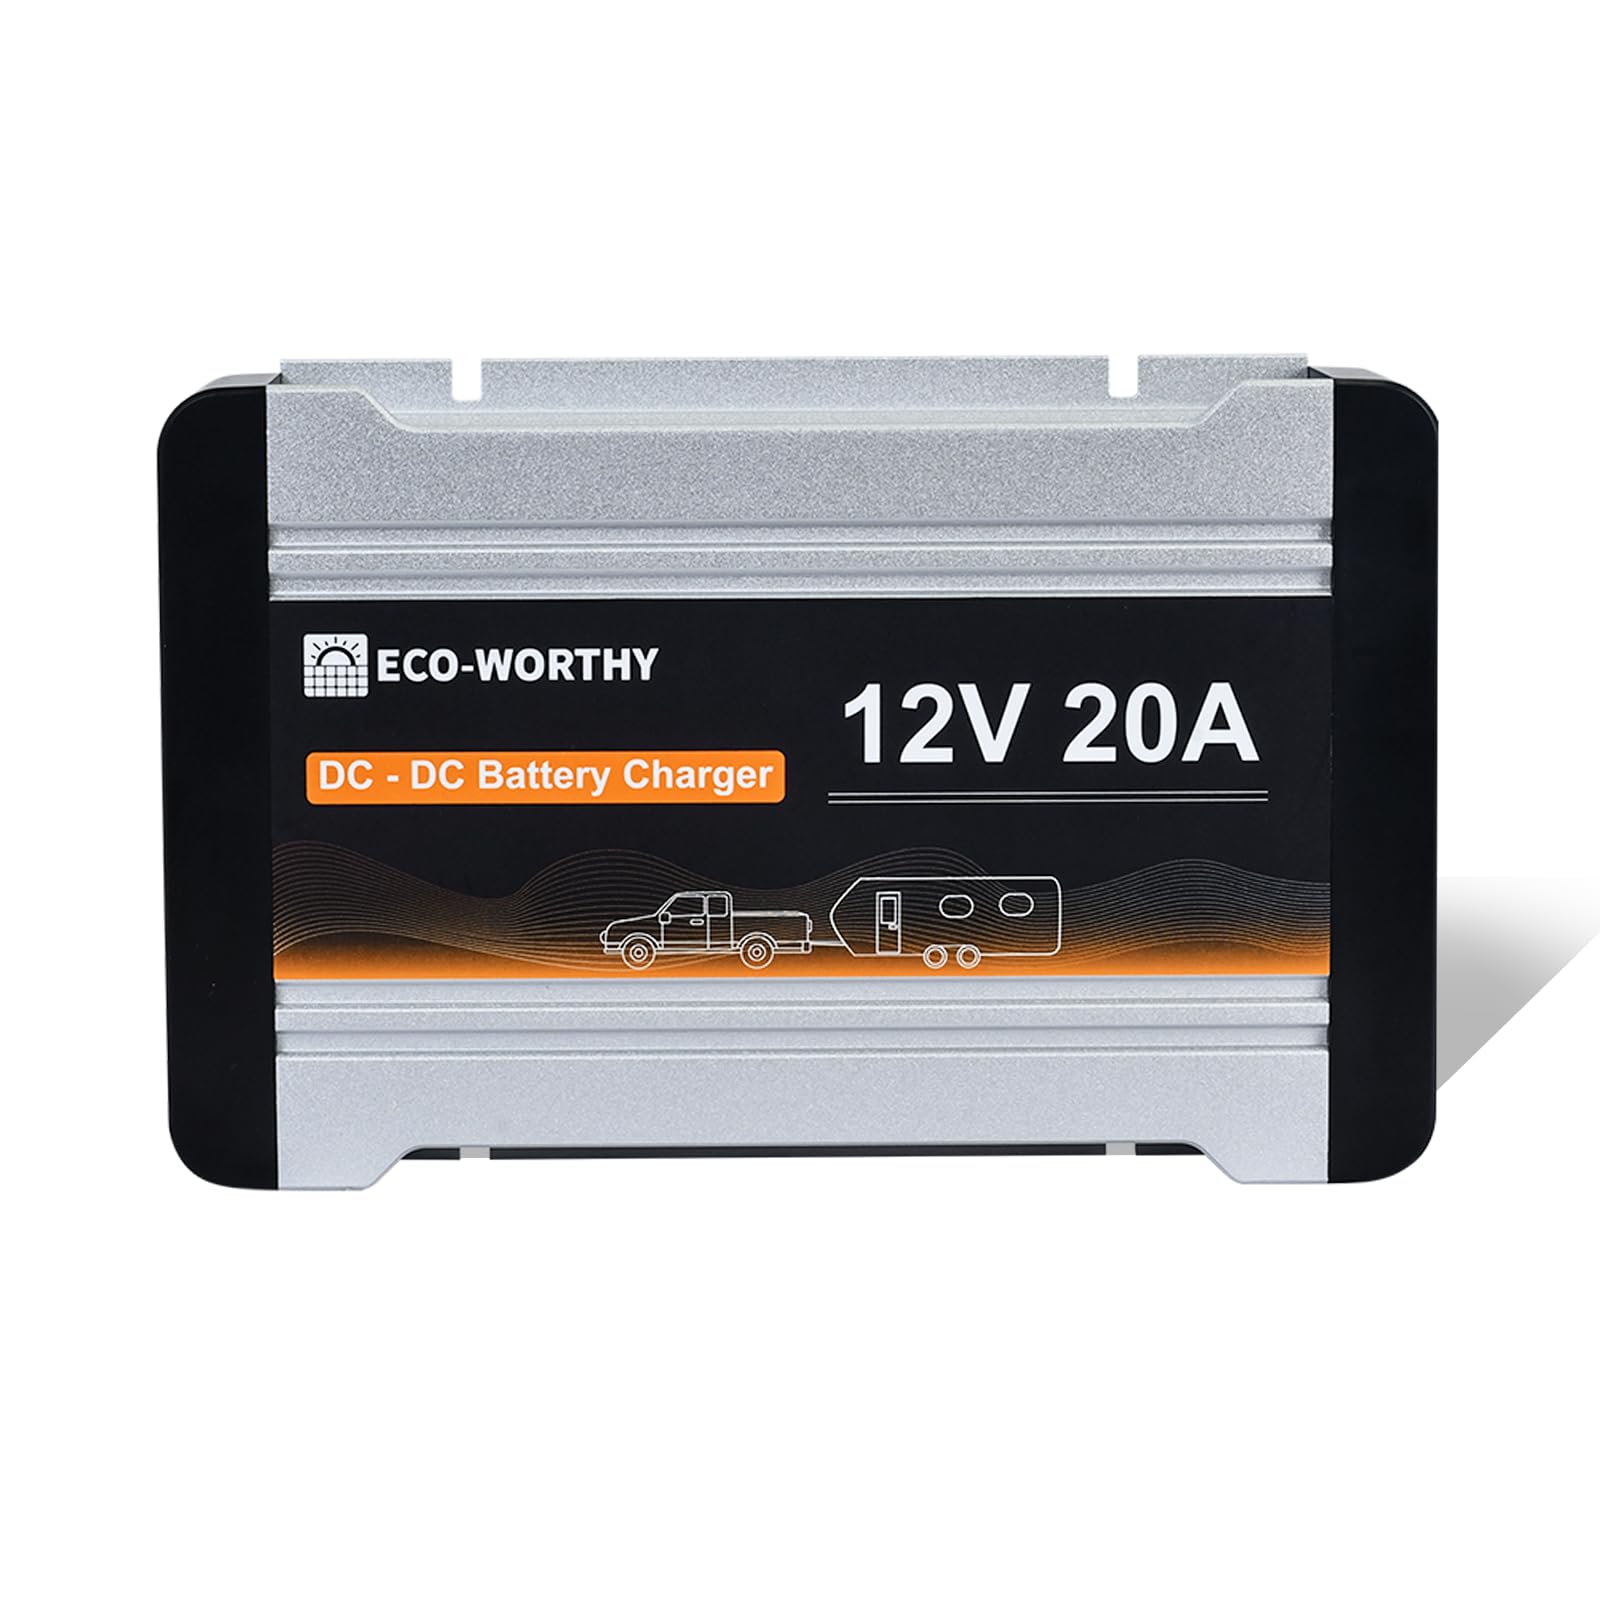 ECO-WORTHY Ladebooster 12V 20A DC-DC Batterieladegerät für LiFePO4 Batterie,Gel, AGM,Ladebooster für Wohnmobilen, Wohnwagen